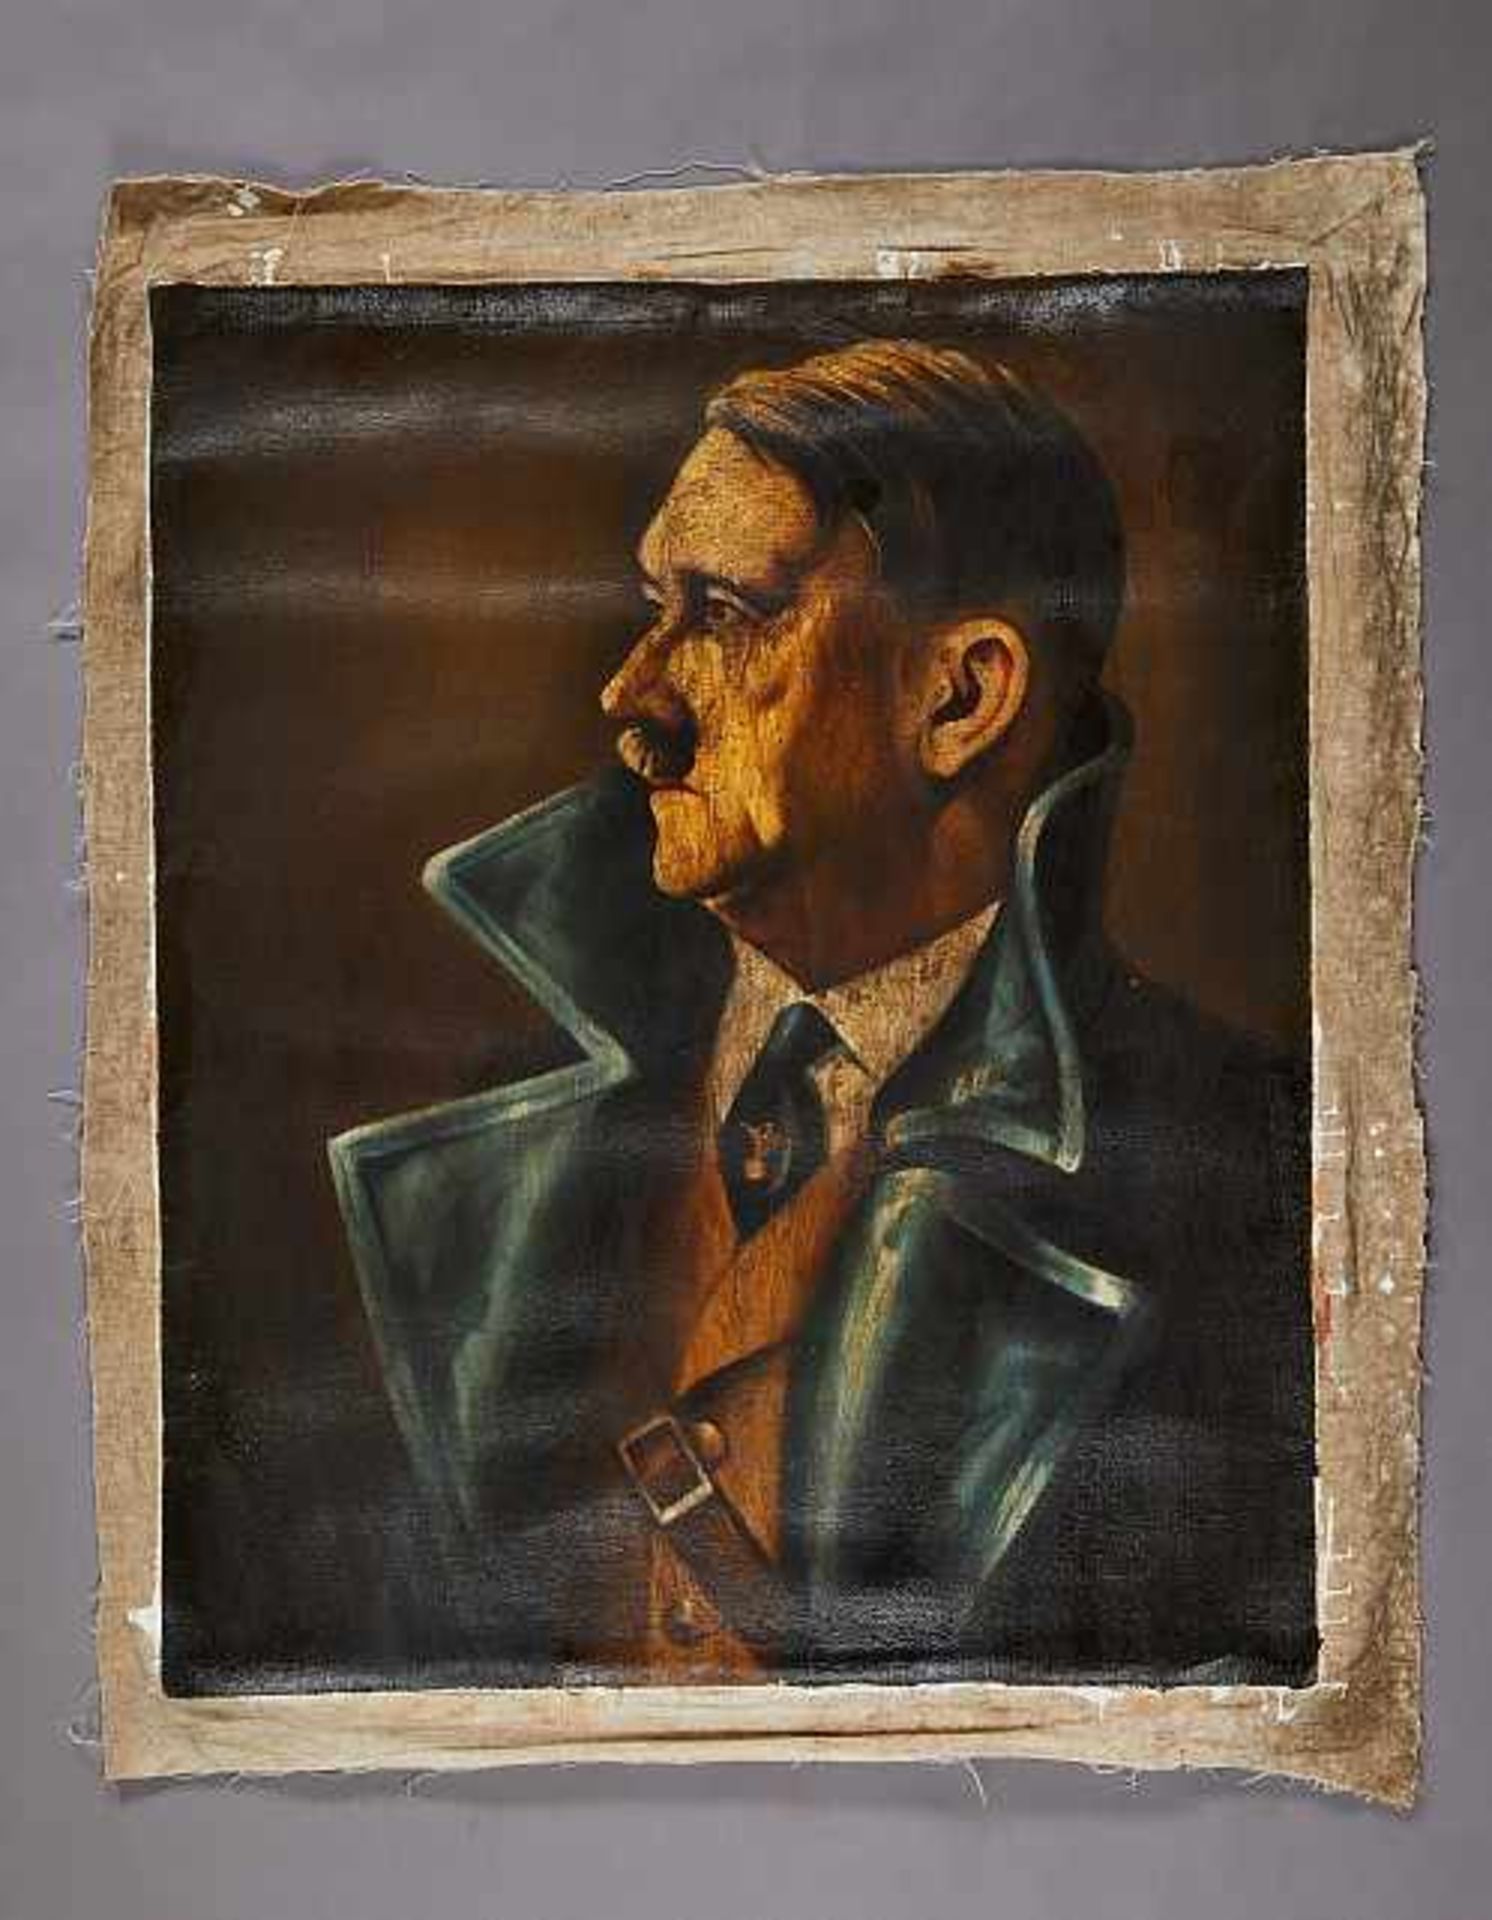 Deutsches Reich 1933 - 1945 - Kunst im Dritten Reich 1933-1945 : Portrait of Adolf Hitler Based on